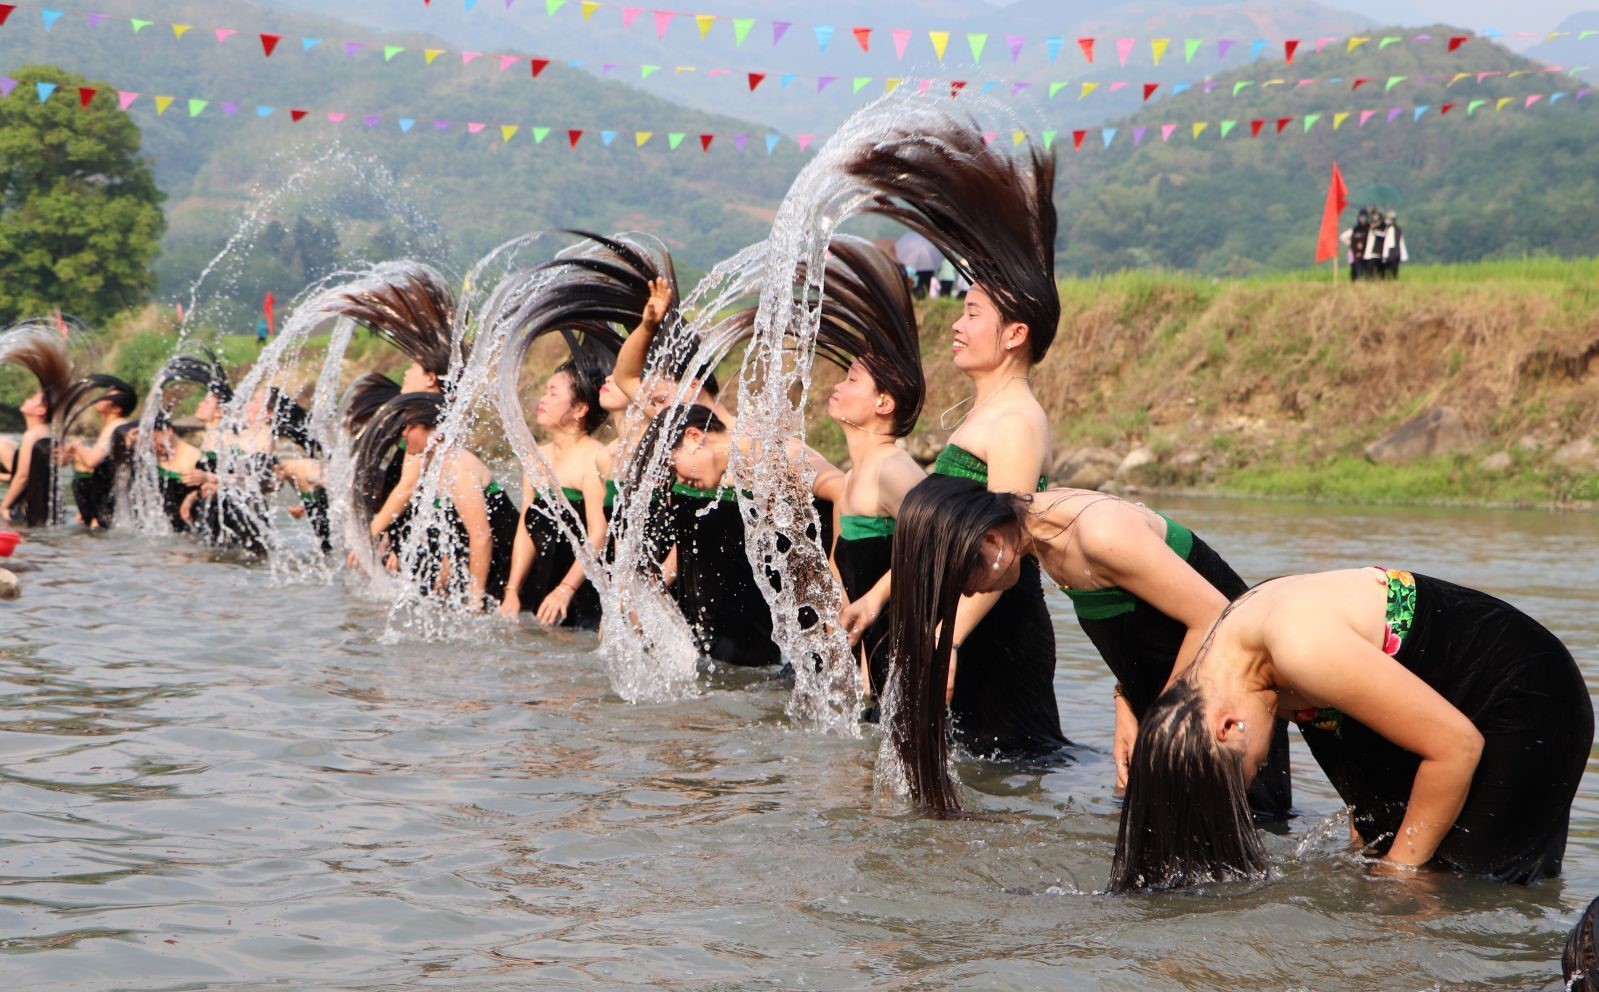 Phụ nữ dân tộc Thái gội đầu ở suối Nậm Lùm trong Lễ hội Áp hô chiêng.